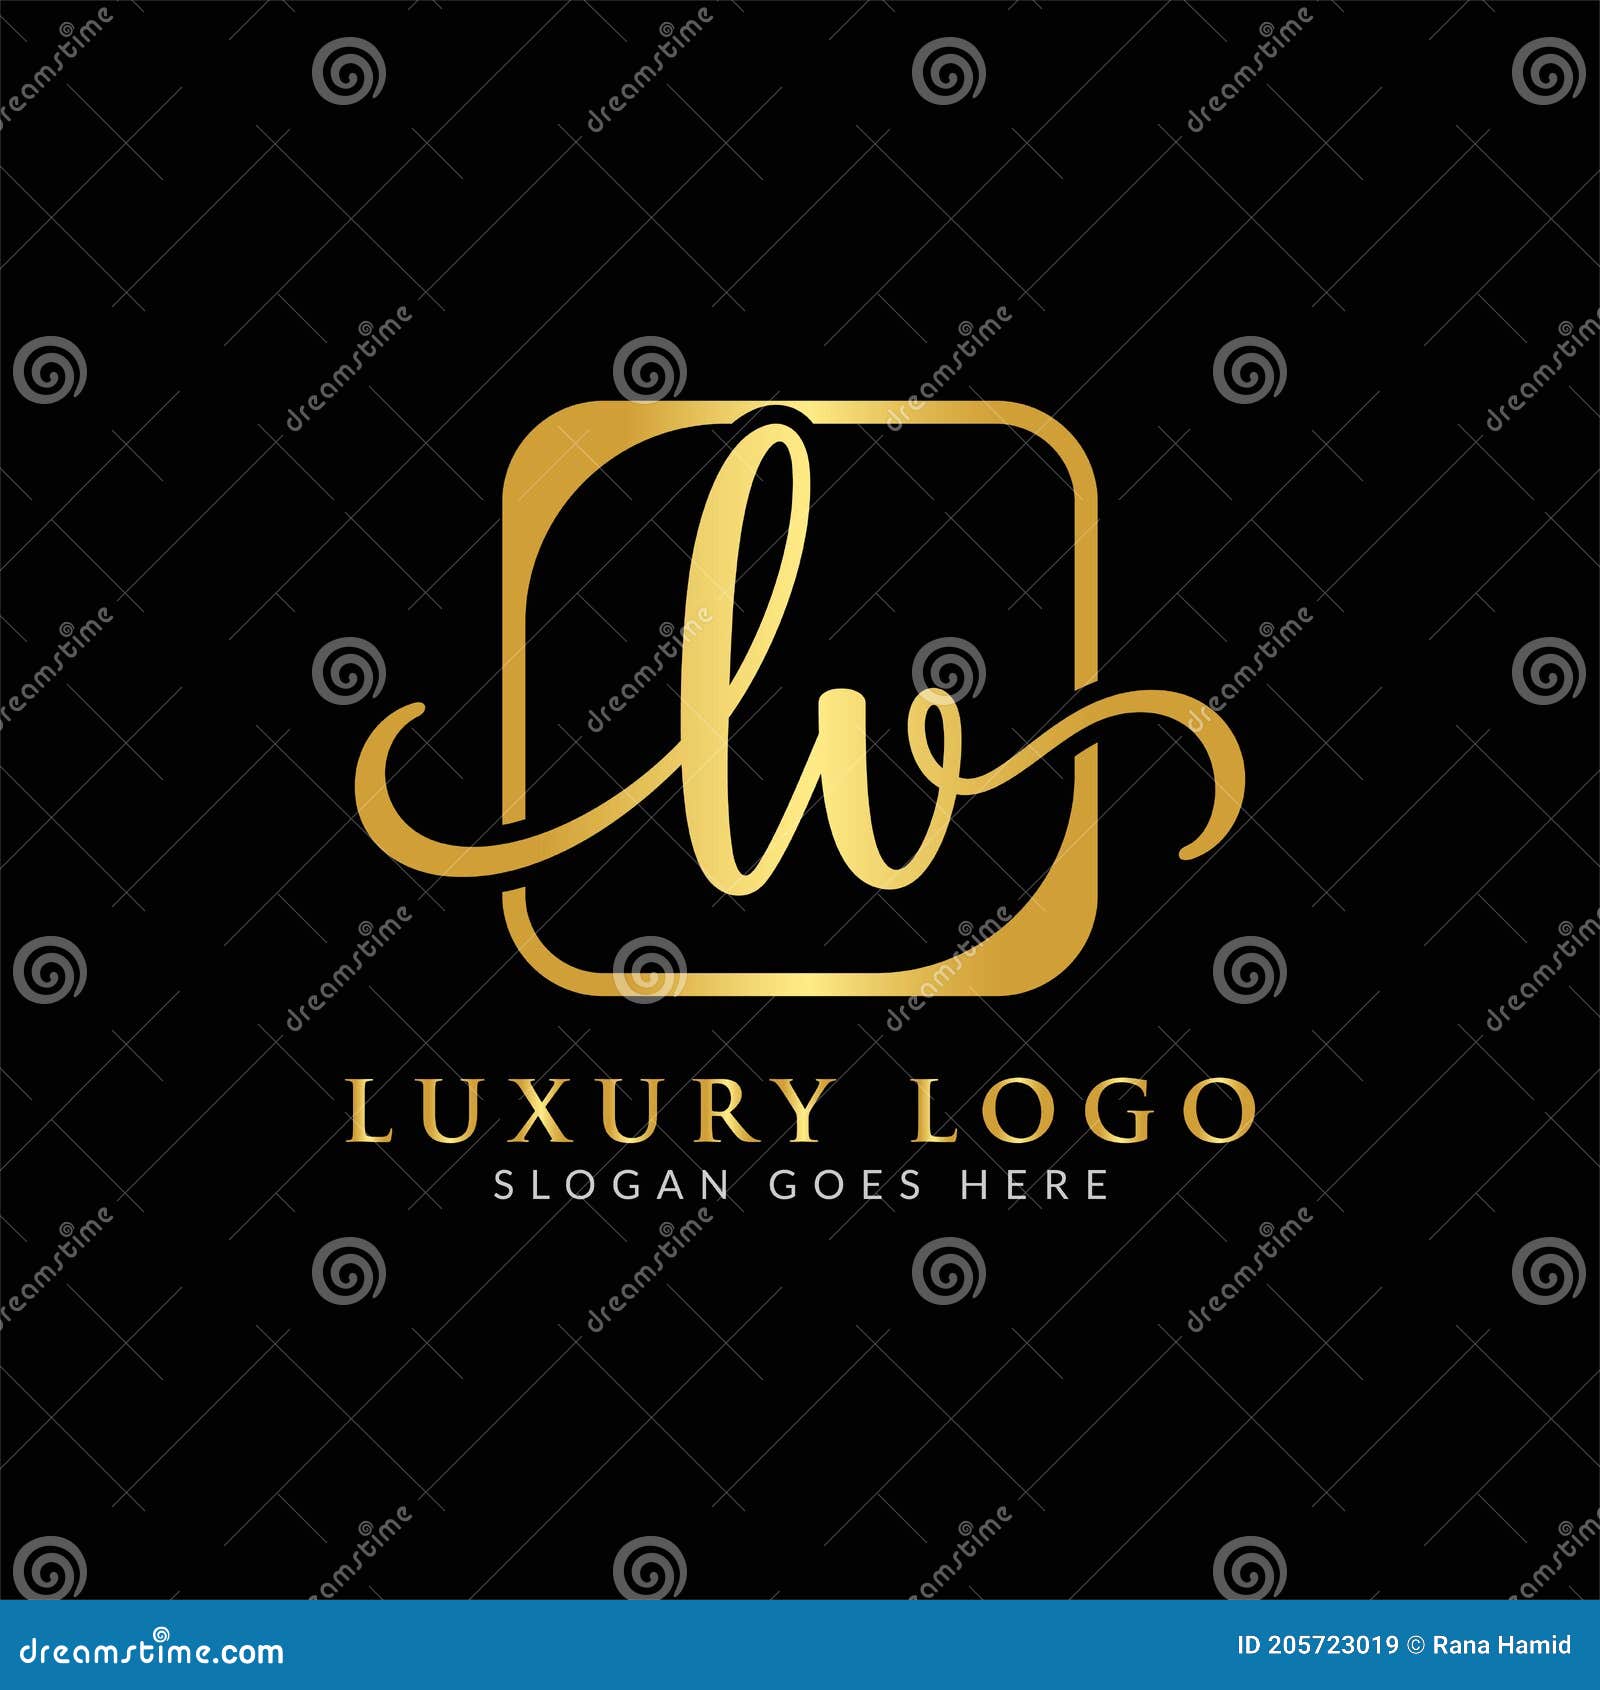 symbol lv logo design